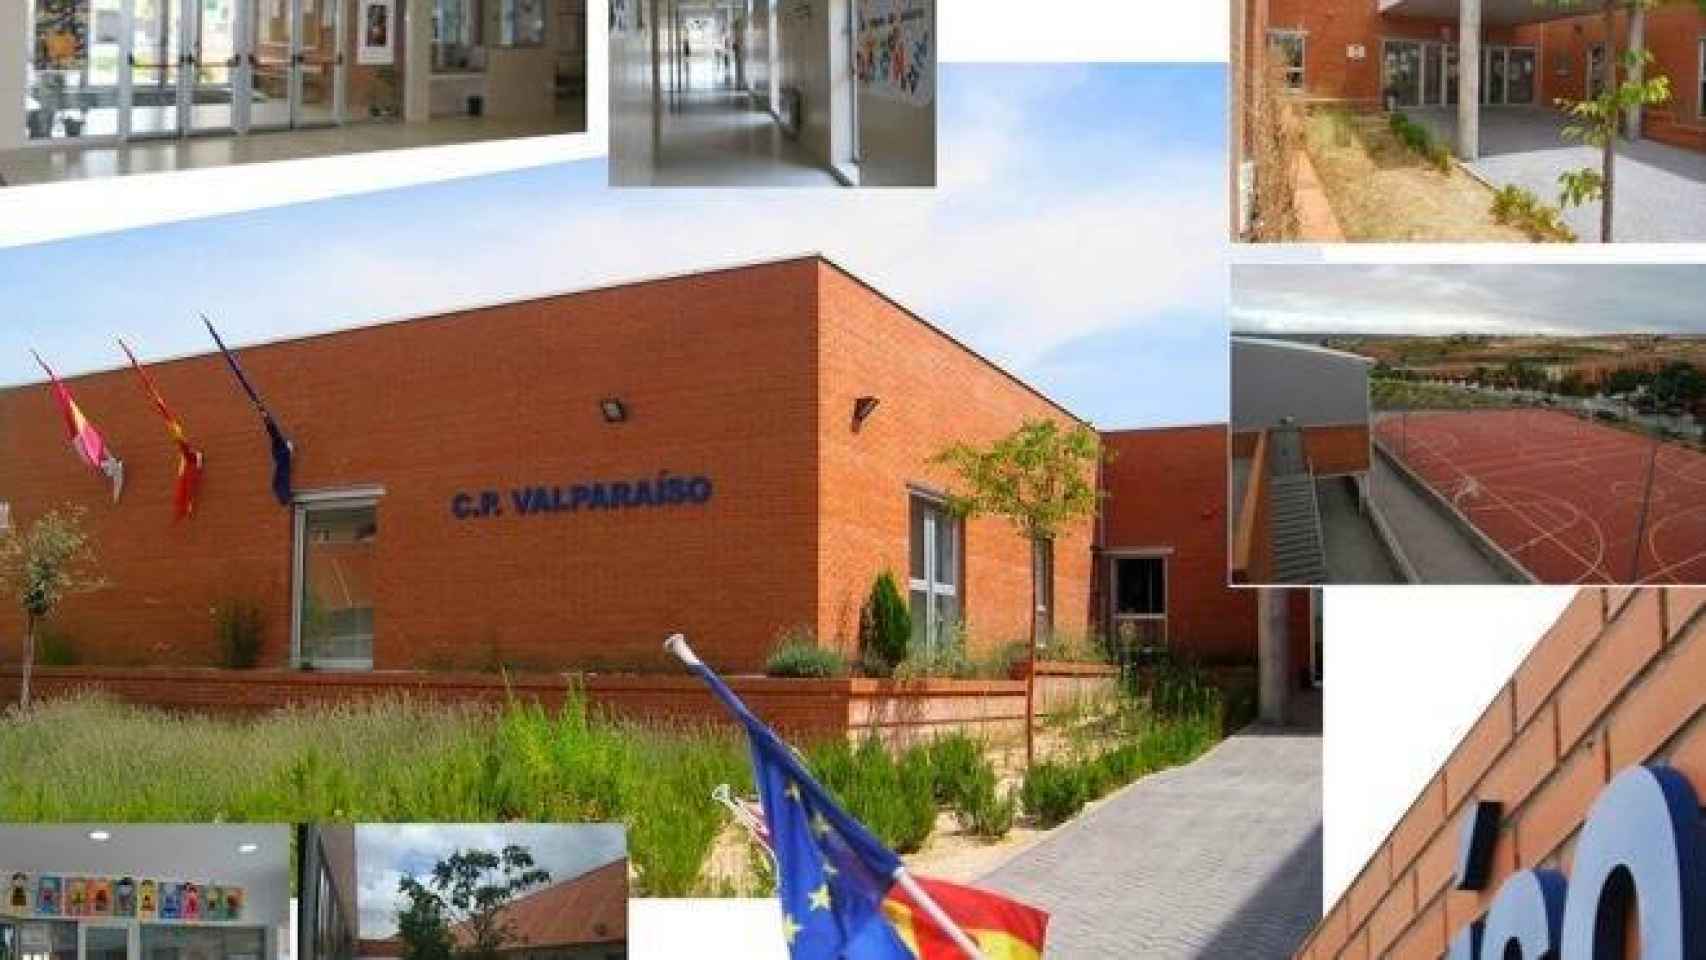 Collage de fotos del colegio Valparaíso de Toledo